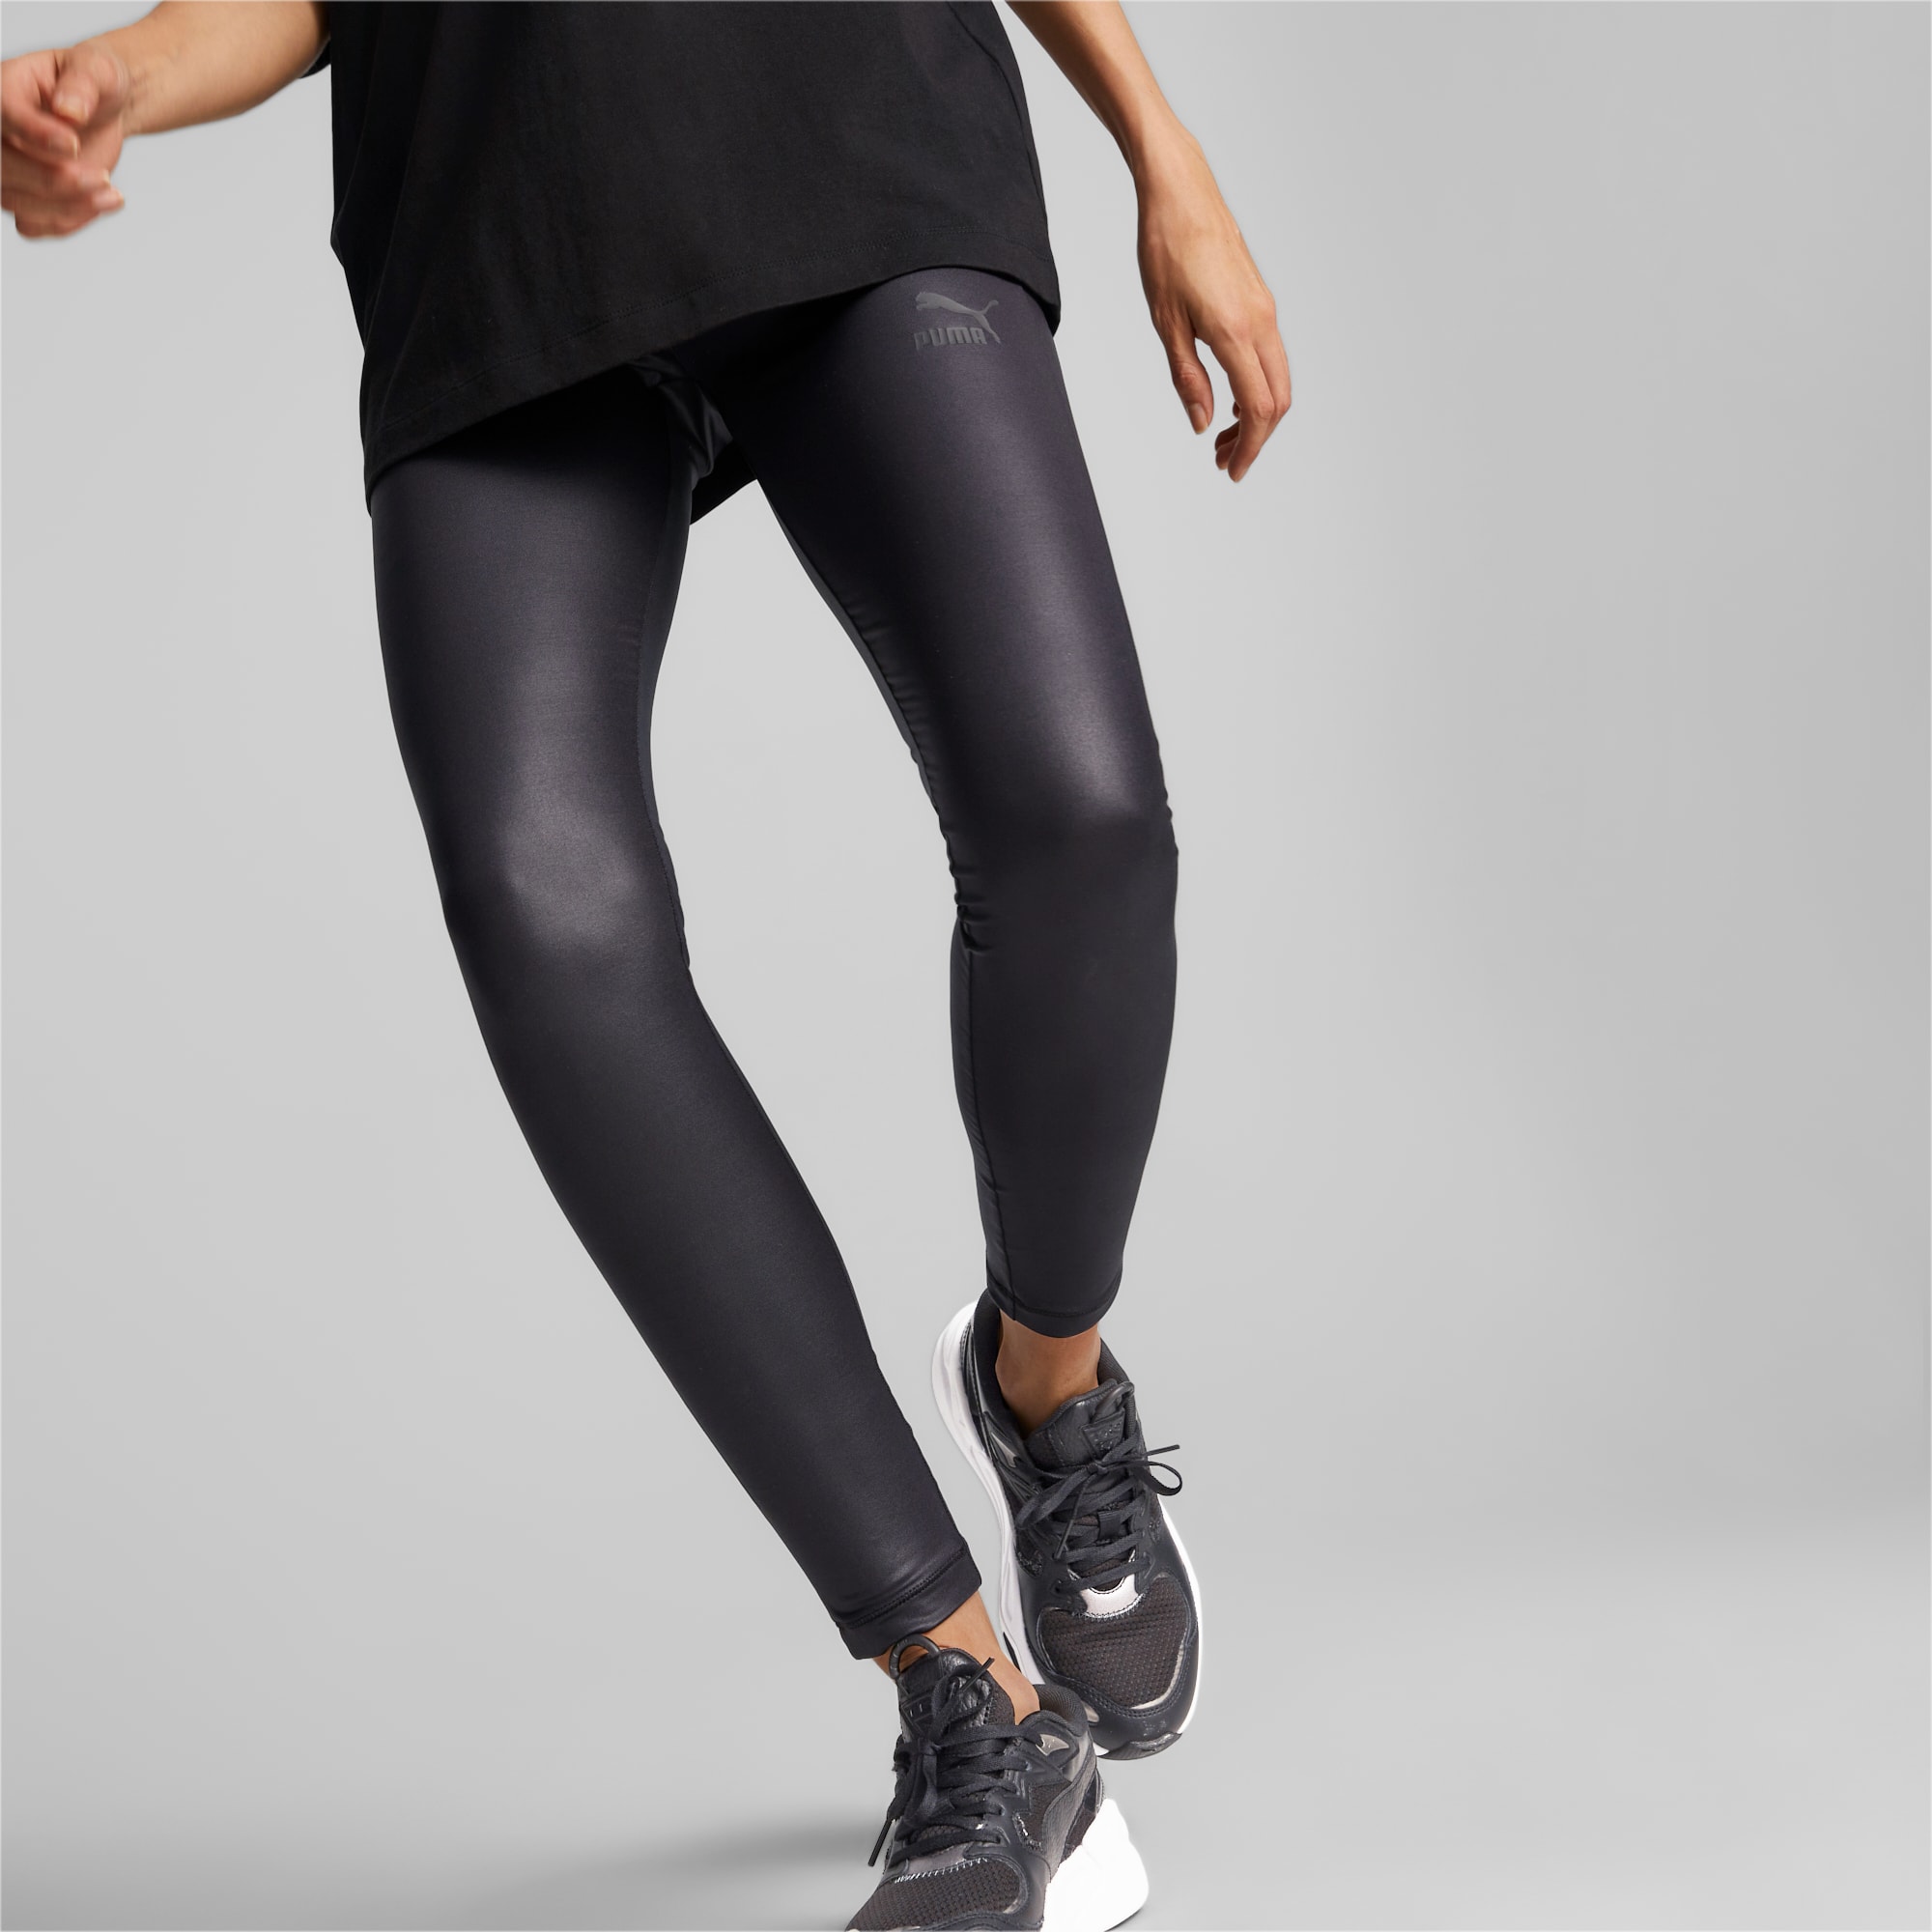 Shiny Insert Leggings - Women - Ready-to-Wear